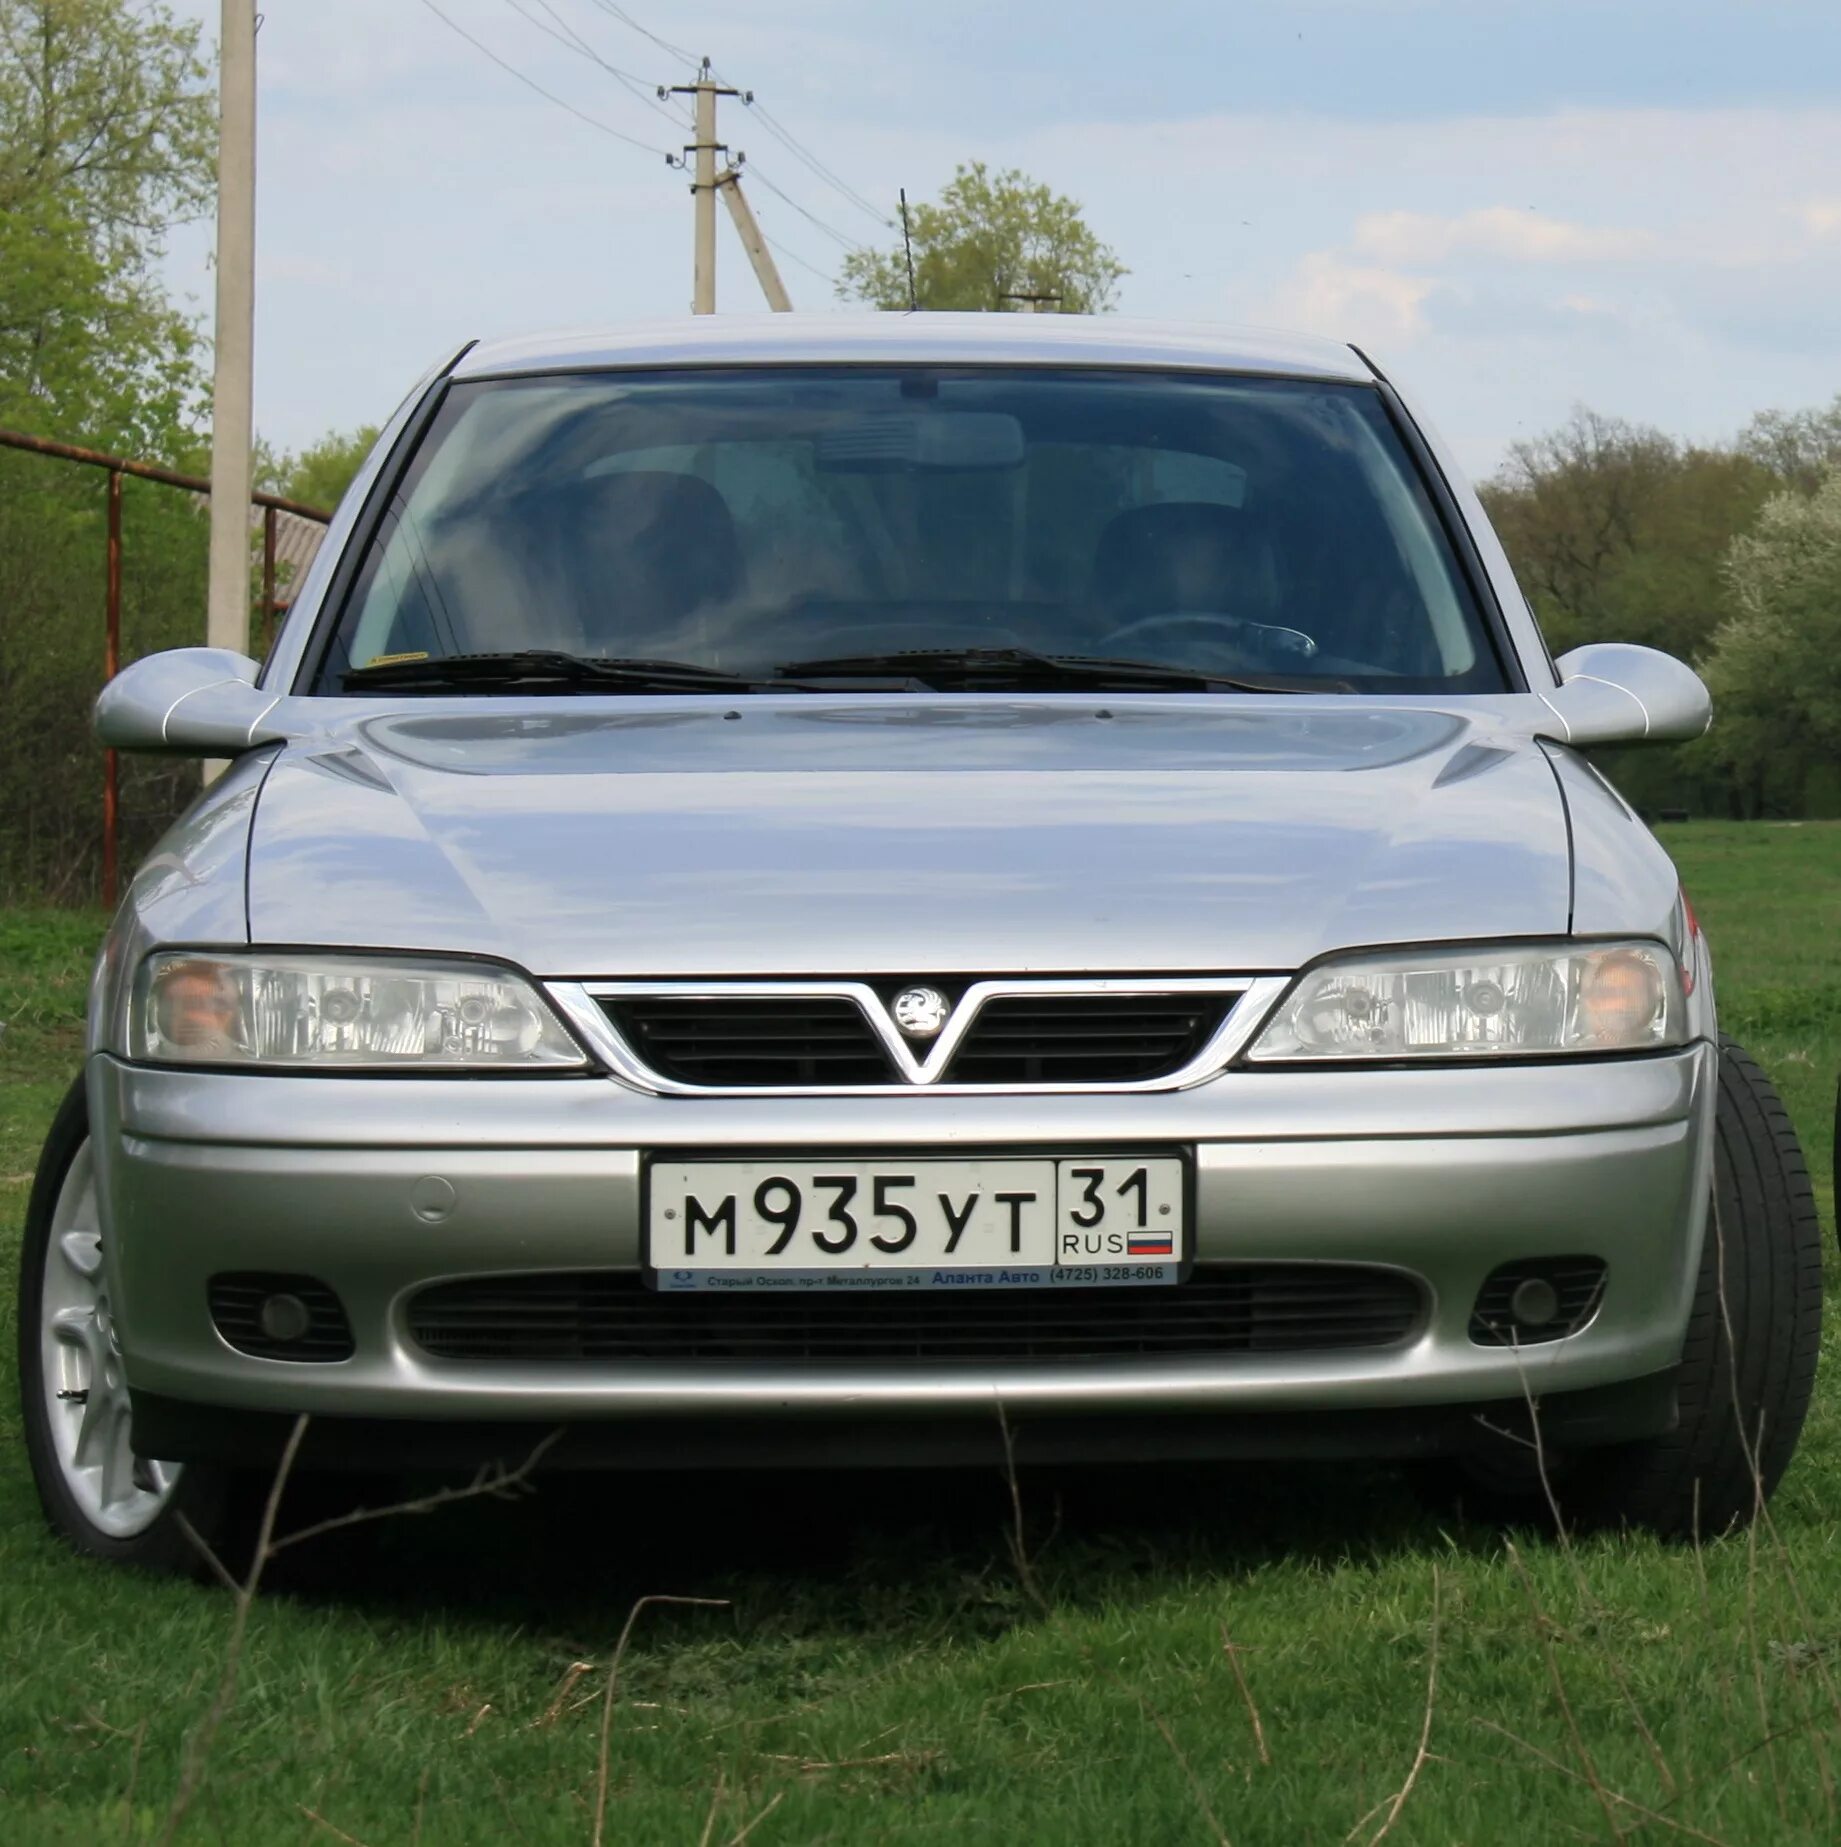 Вектра б 2000 года. Opel Vectra 2000. Опель Вектра б 2000. Опель Вектра б 2000г. Vectra b ьуманка Опель Вектра.